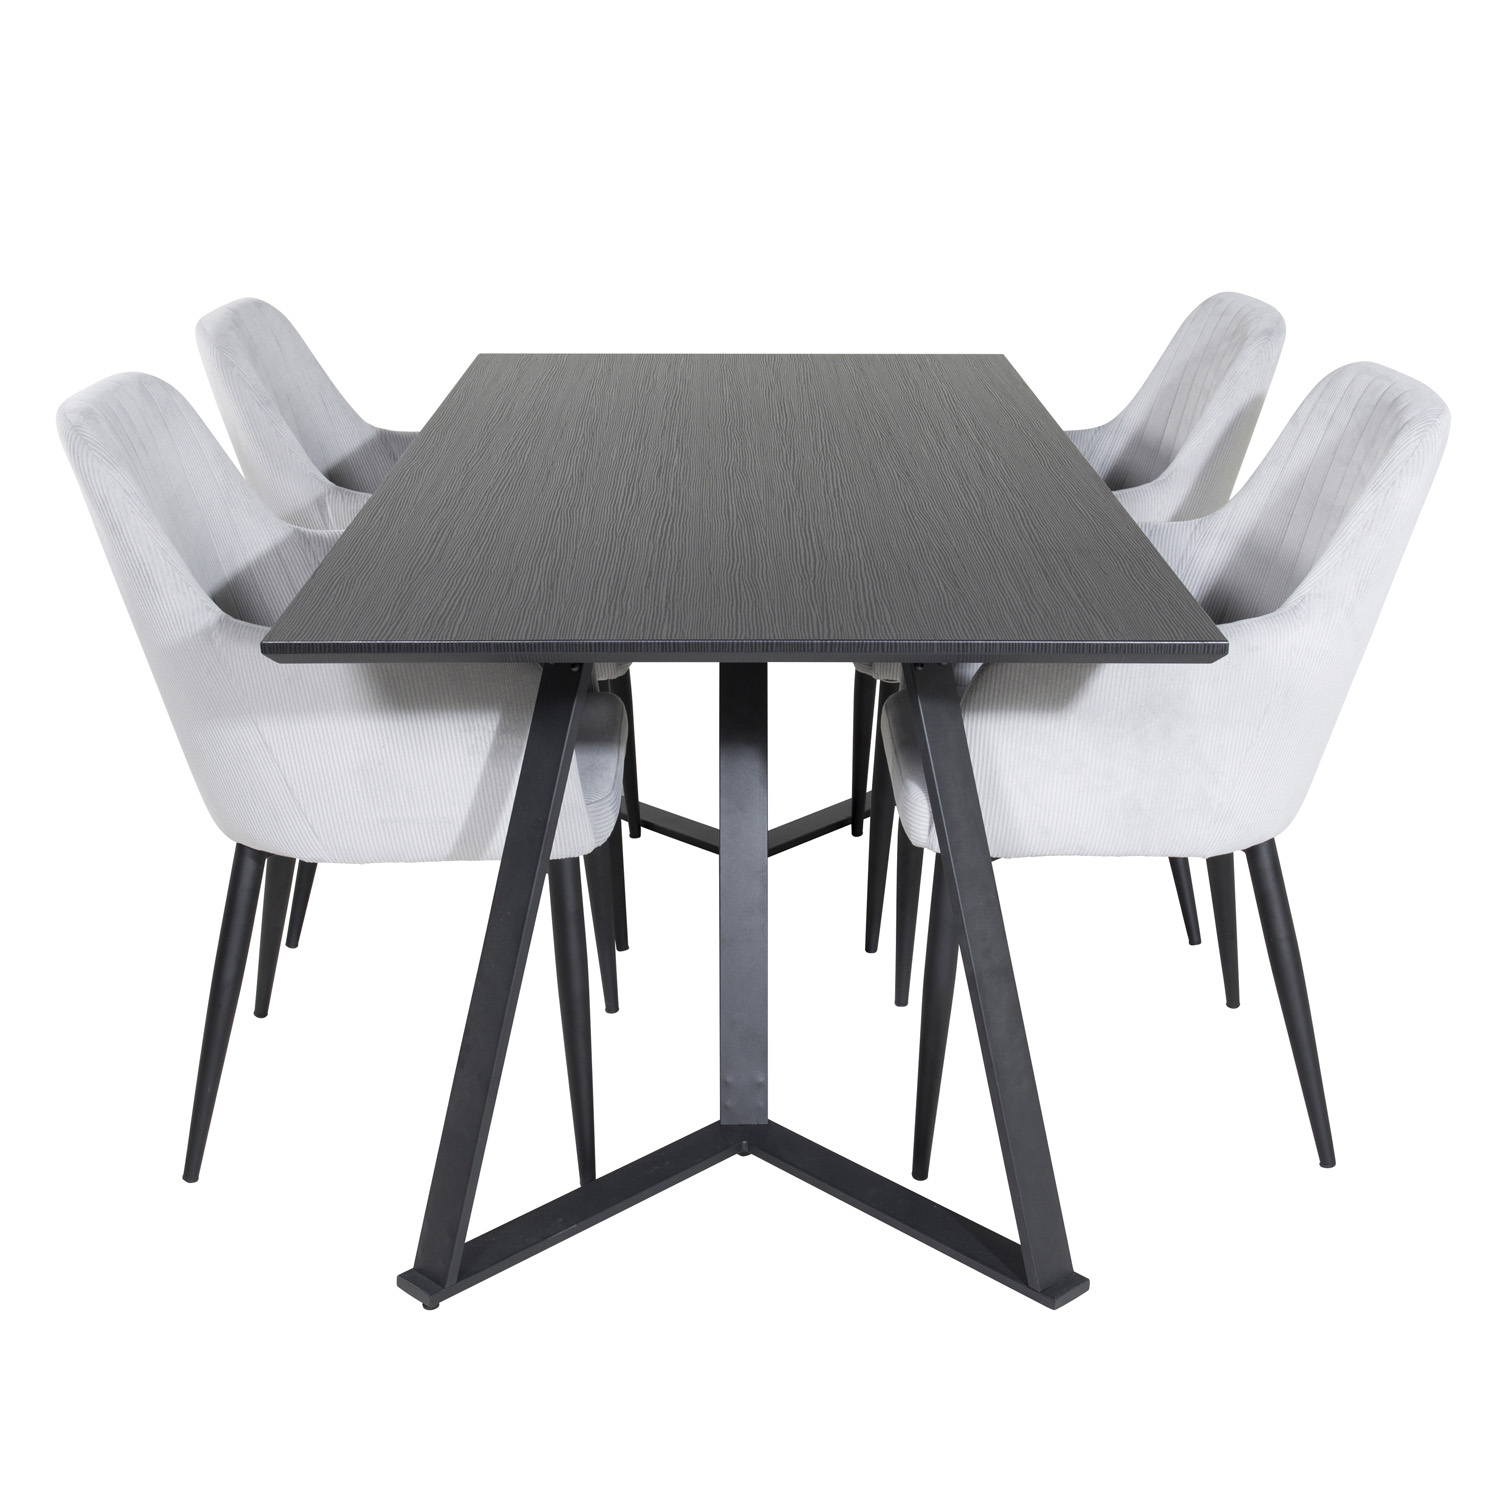 4: VENTURE DESIGN Marina spisebordssæt, m. 4 stole - sort finer/sort metal og grå fløjl/sort metal